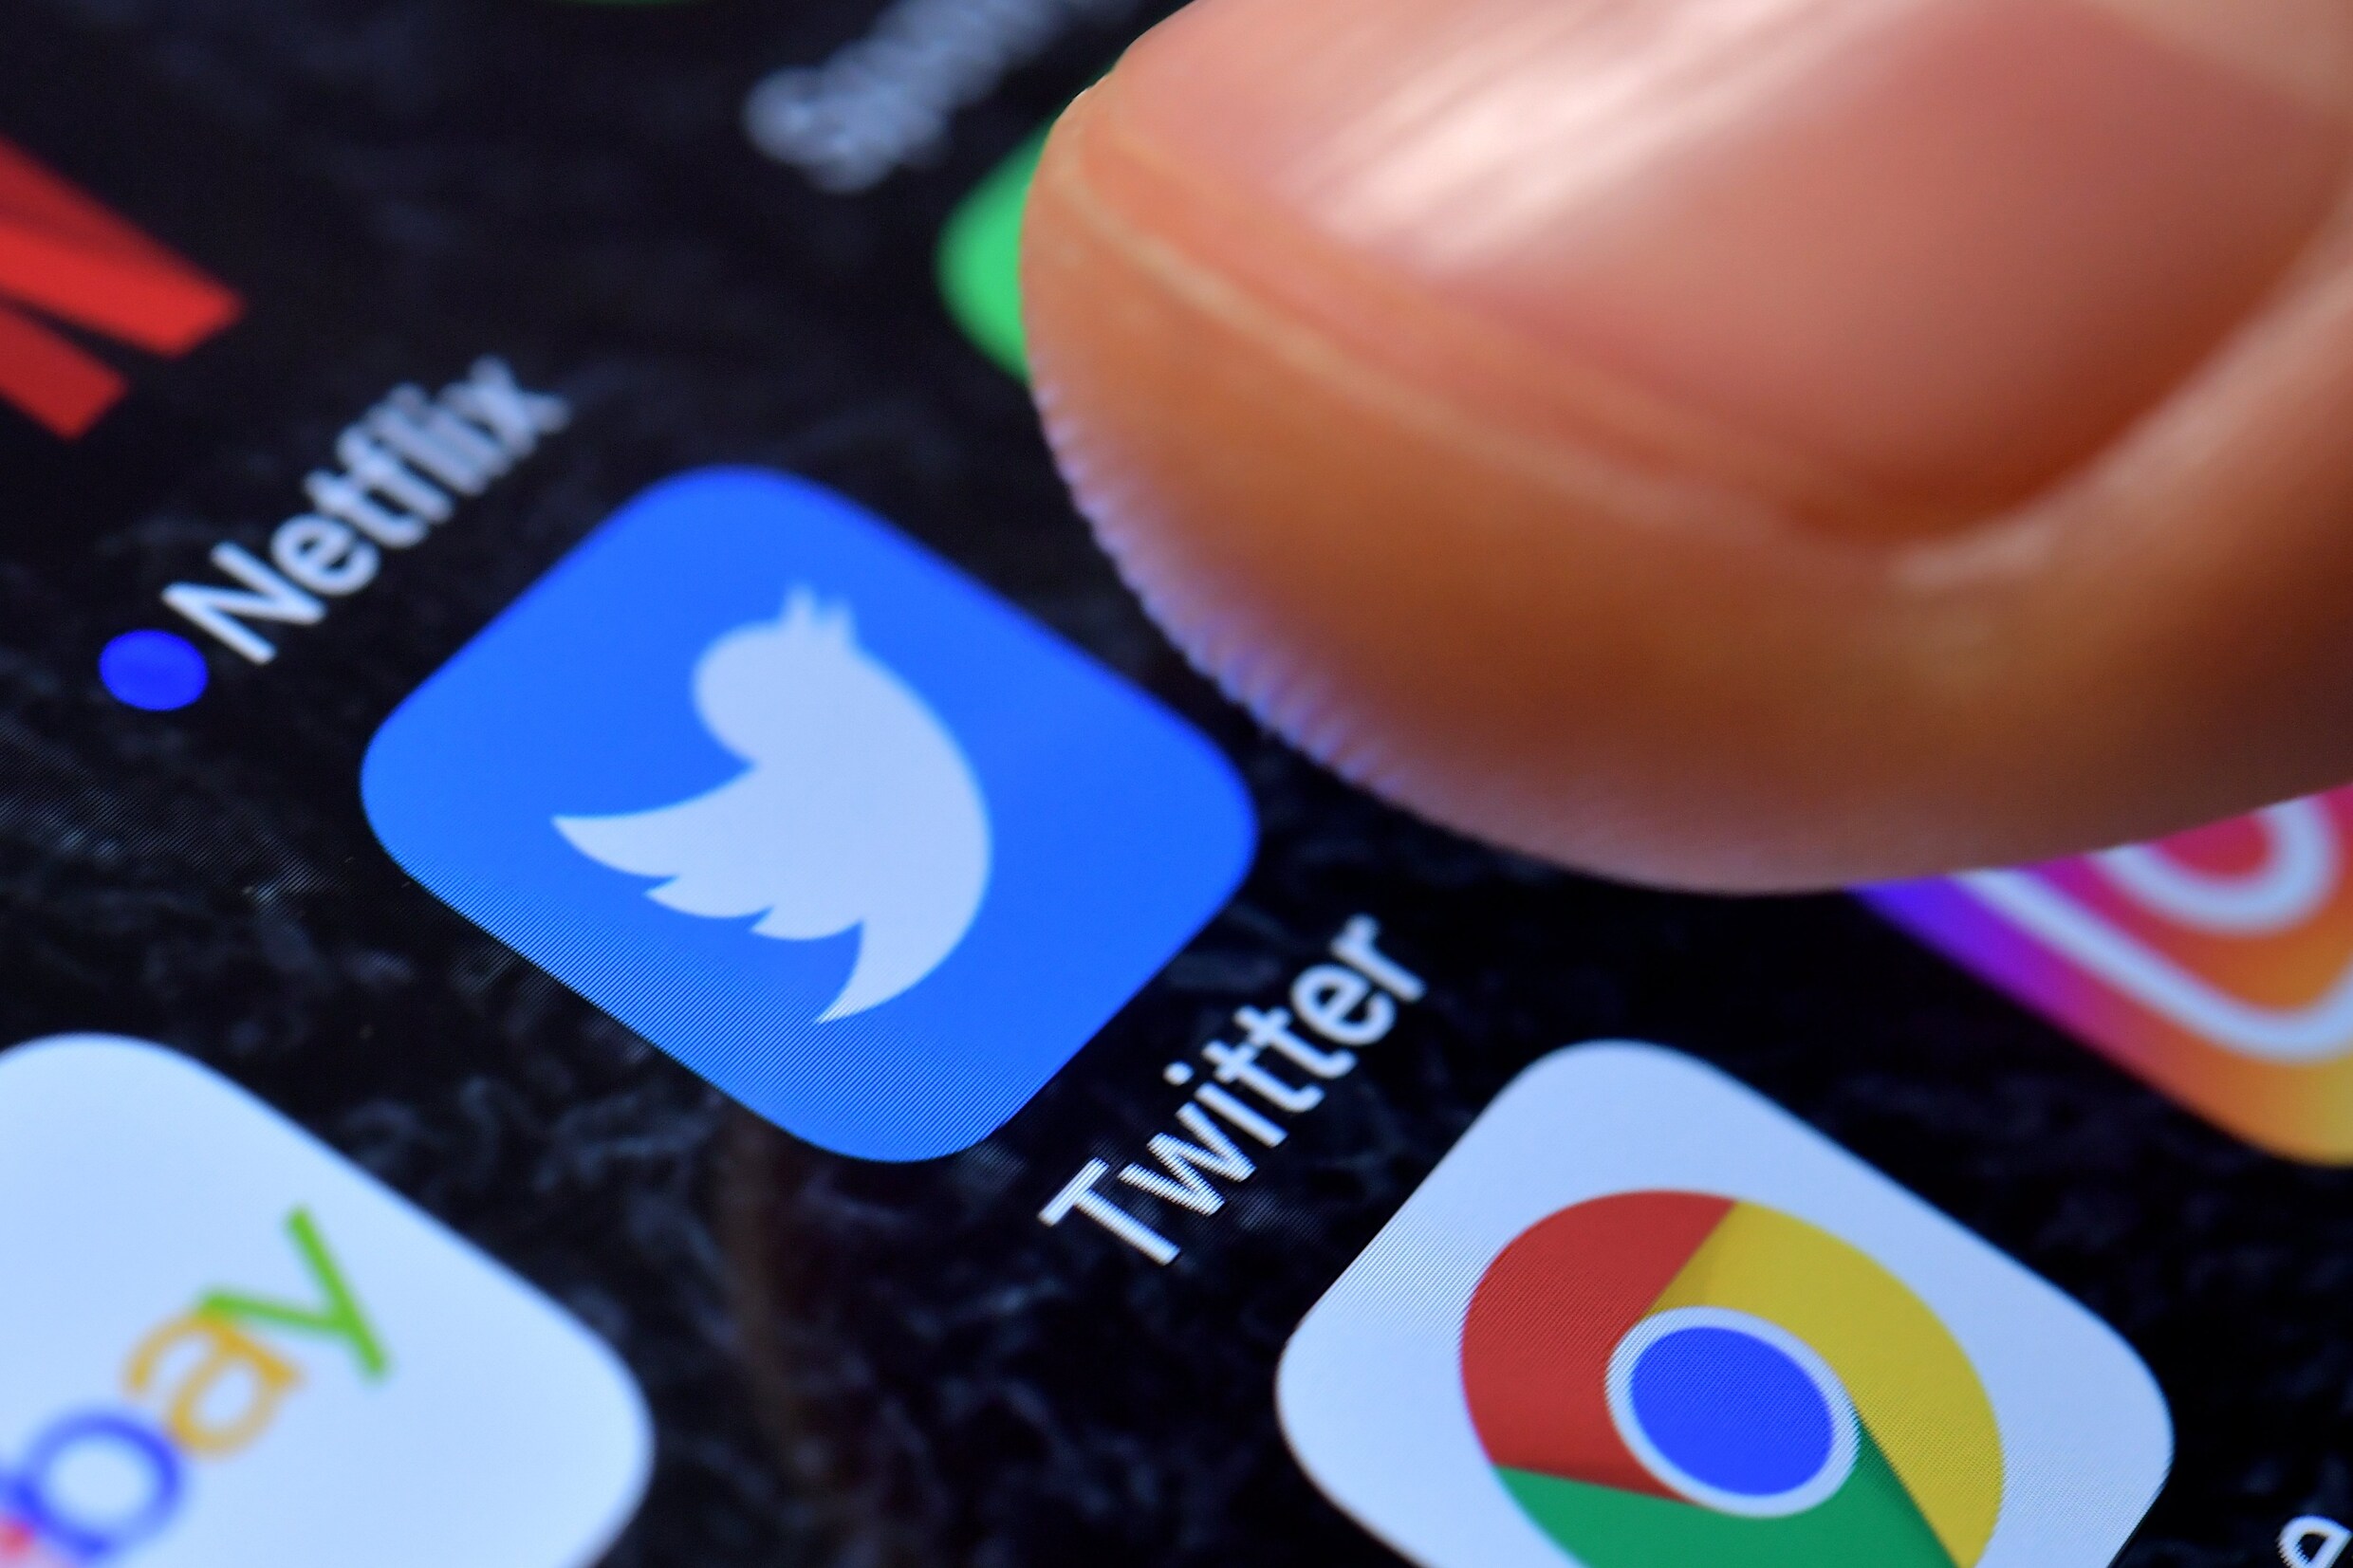 Meeste twitteraars verspreiden foute informatie tijdens rampen